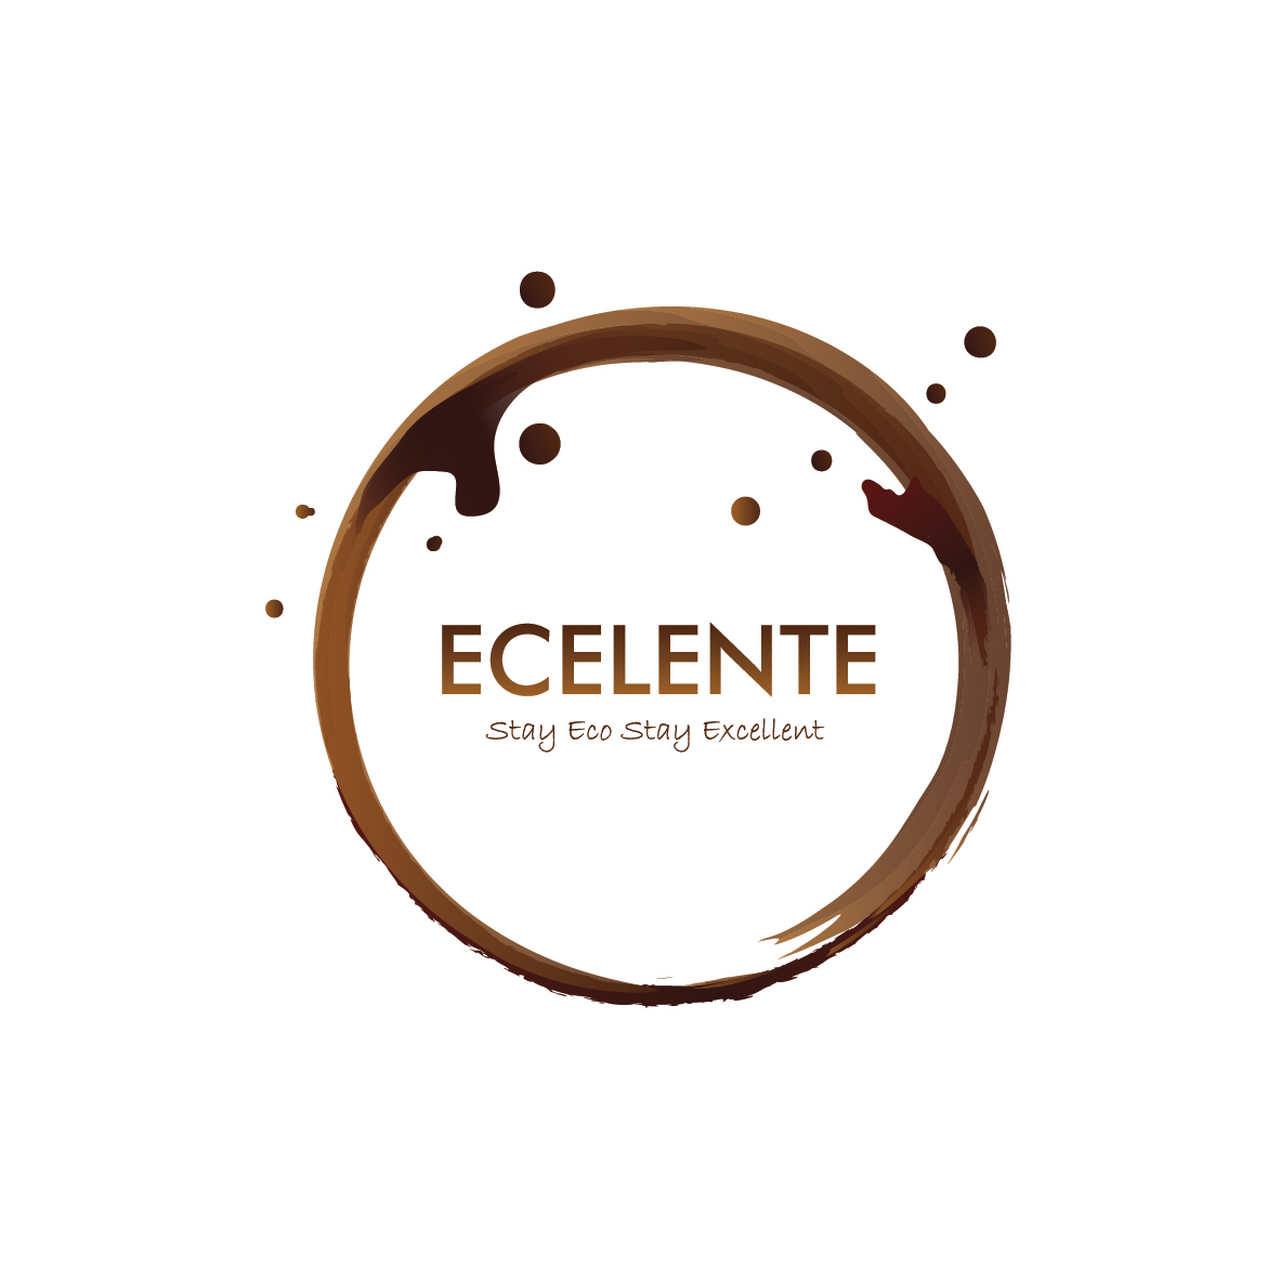 współpracuję z firmą Ecelente od październik 2020r